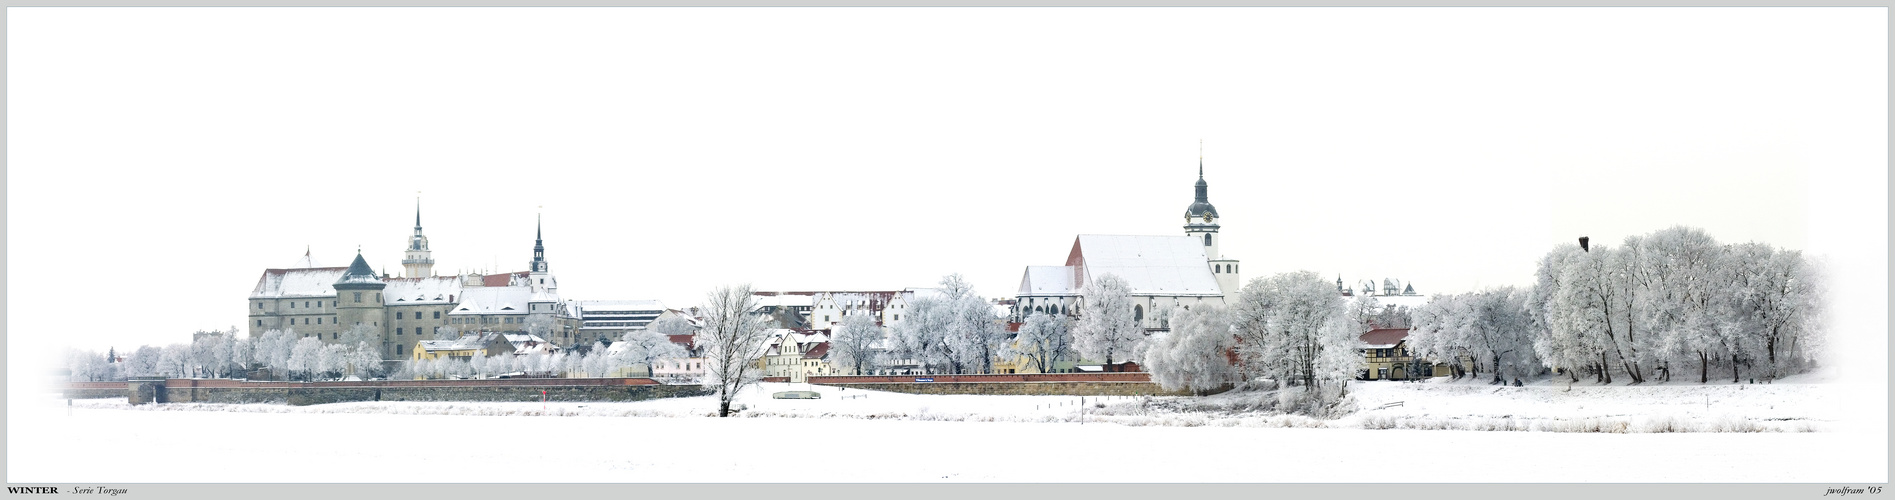 Winterpanorama Torgau